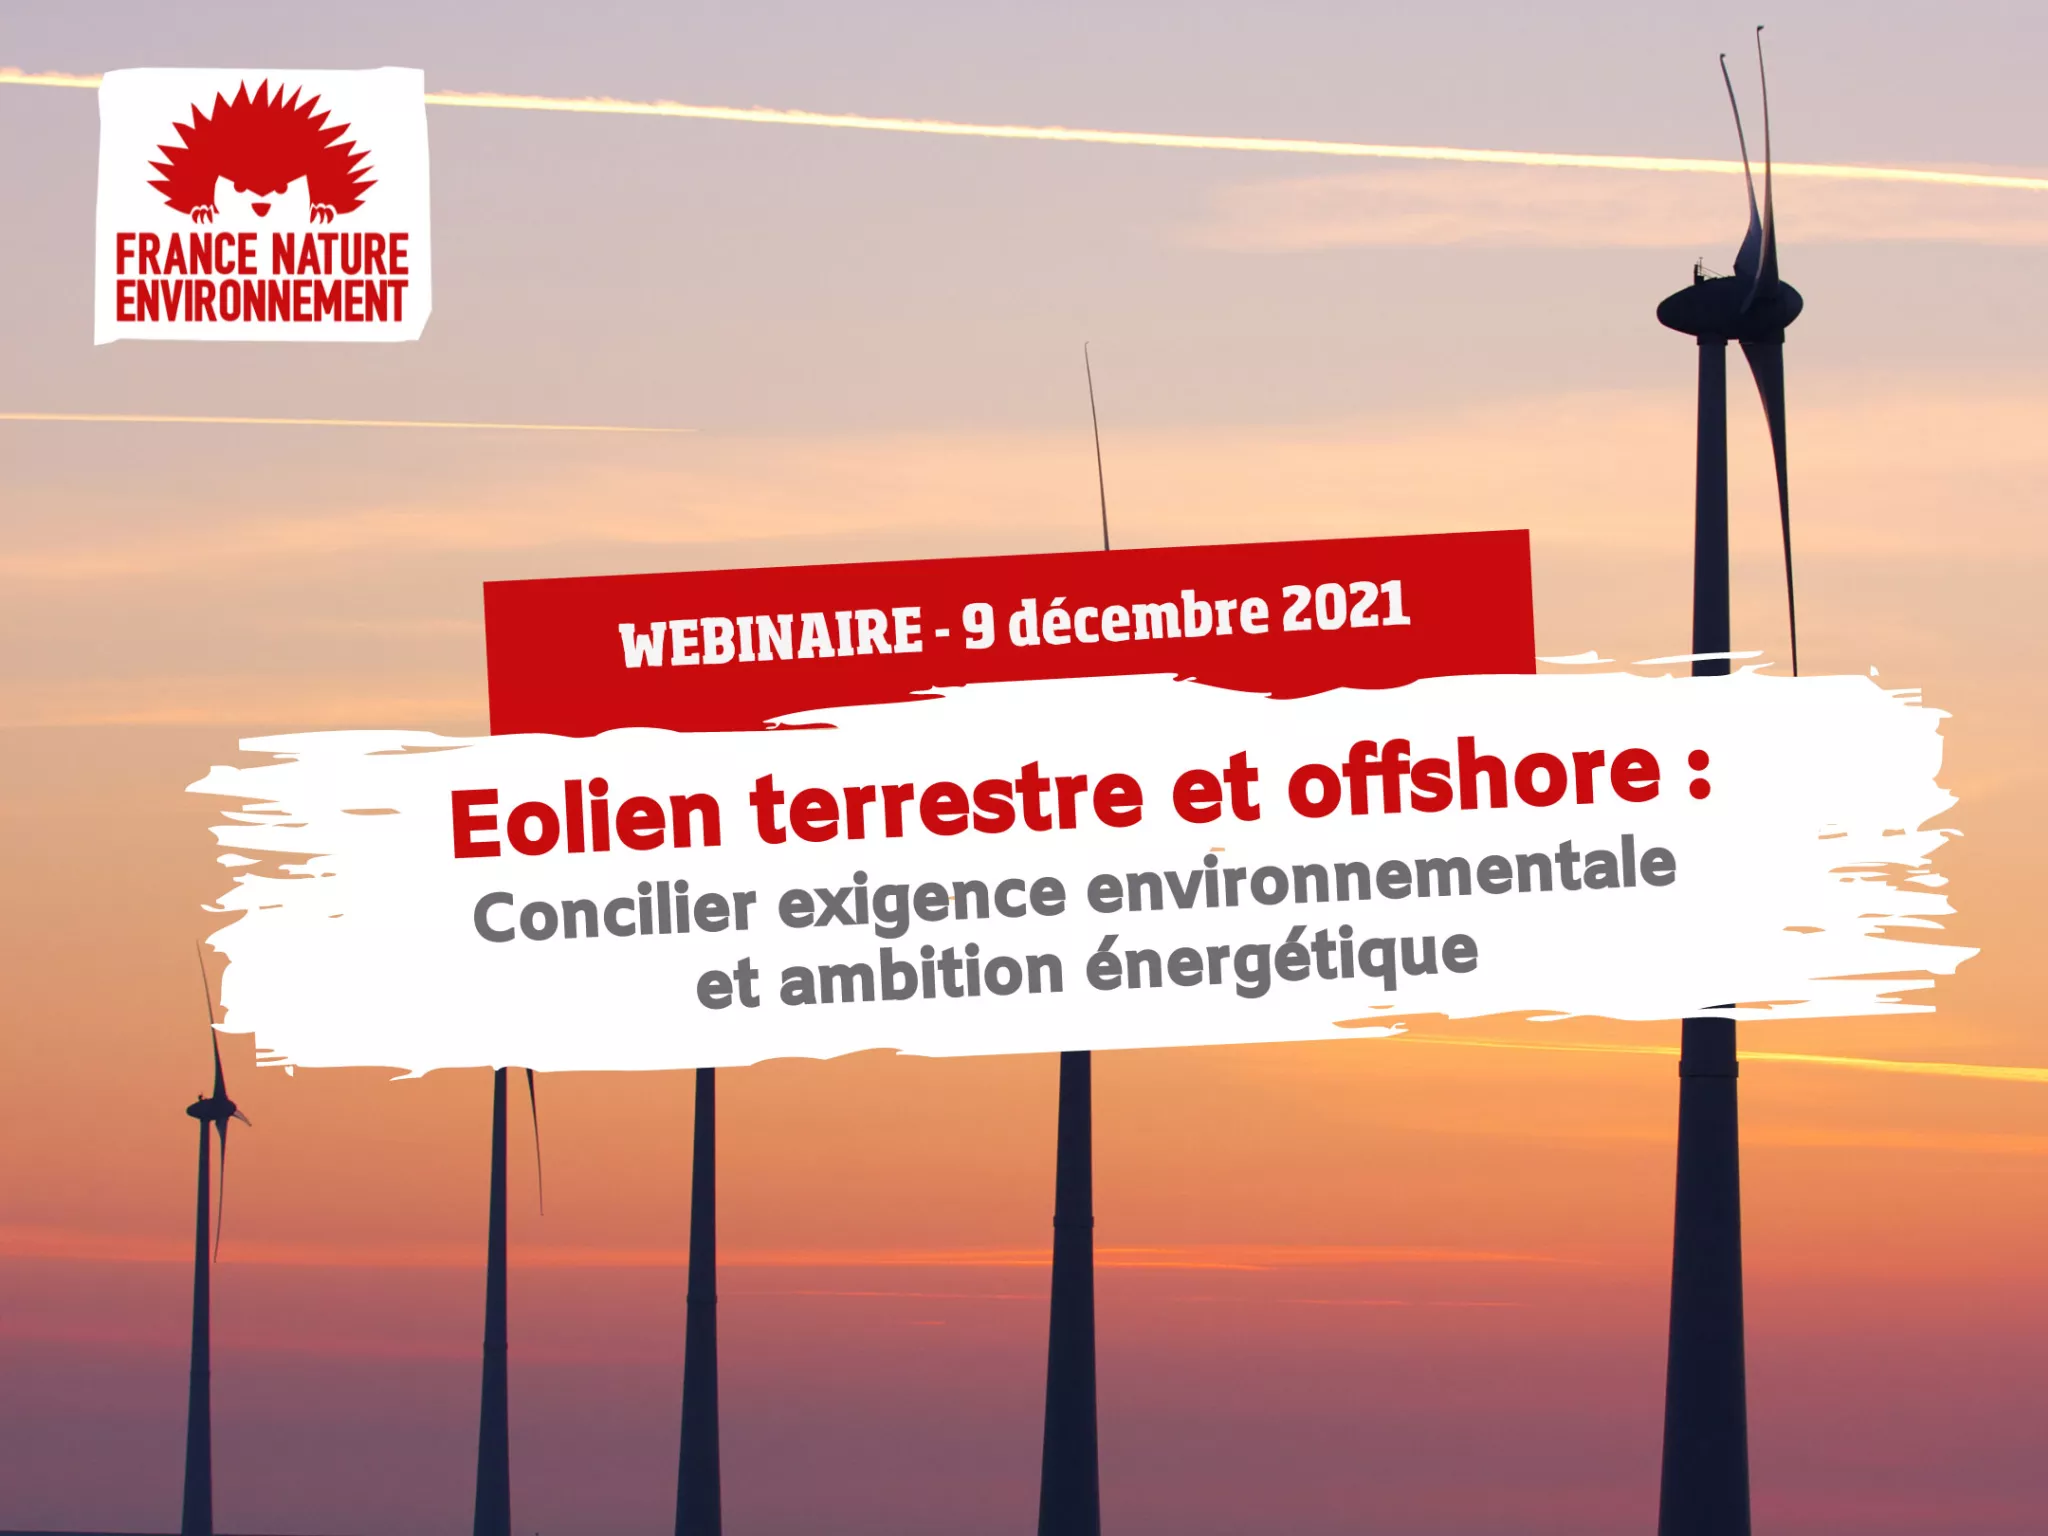 Eolien terrestre et offshore : concilier exigence environnementale et ambition énergétique